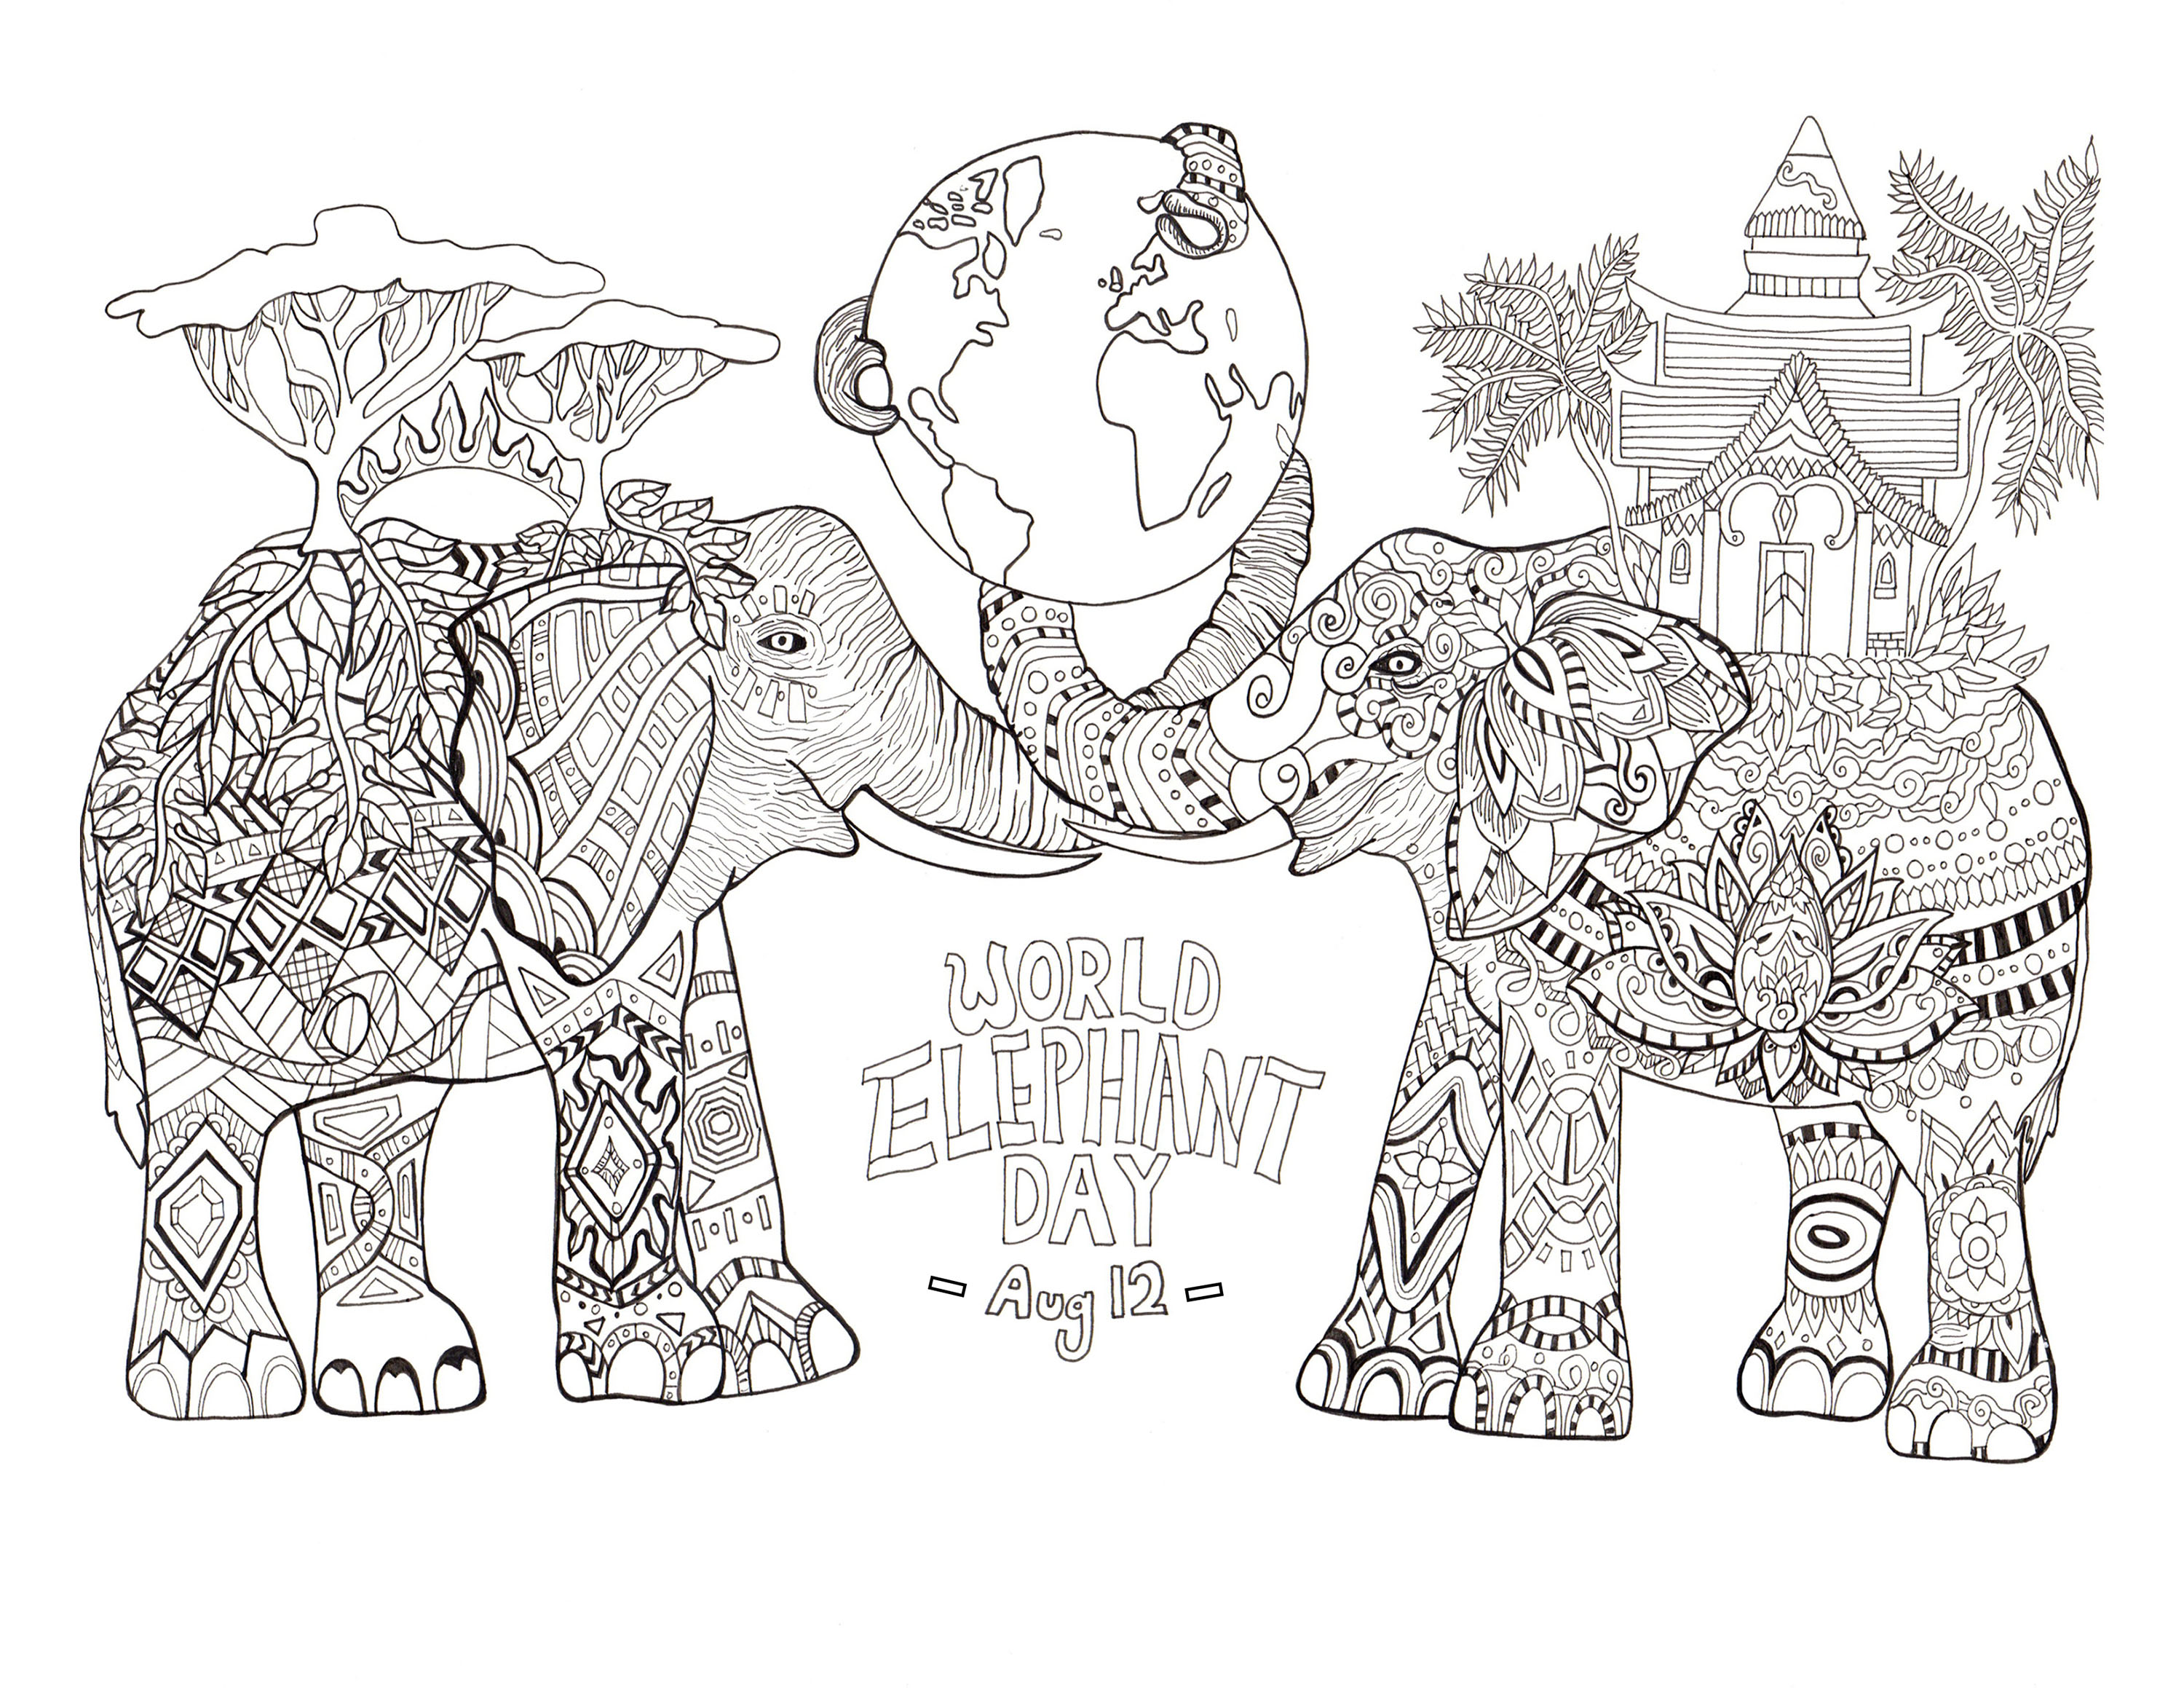 Día Mundial del Elefante. Colorear para el Día Mundial del Elefante (12 de agosto)